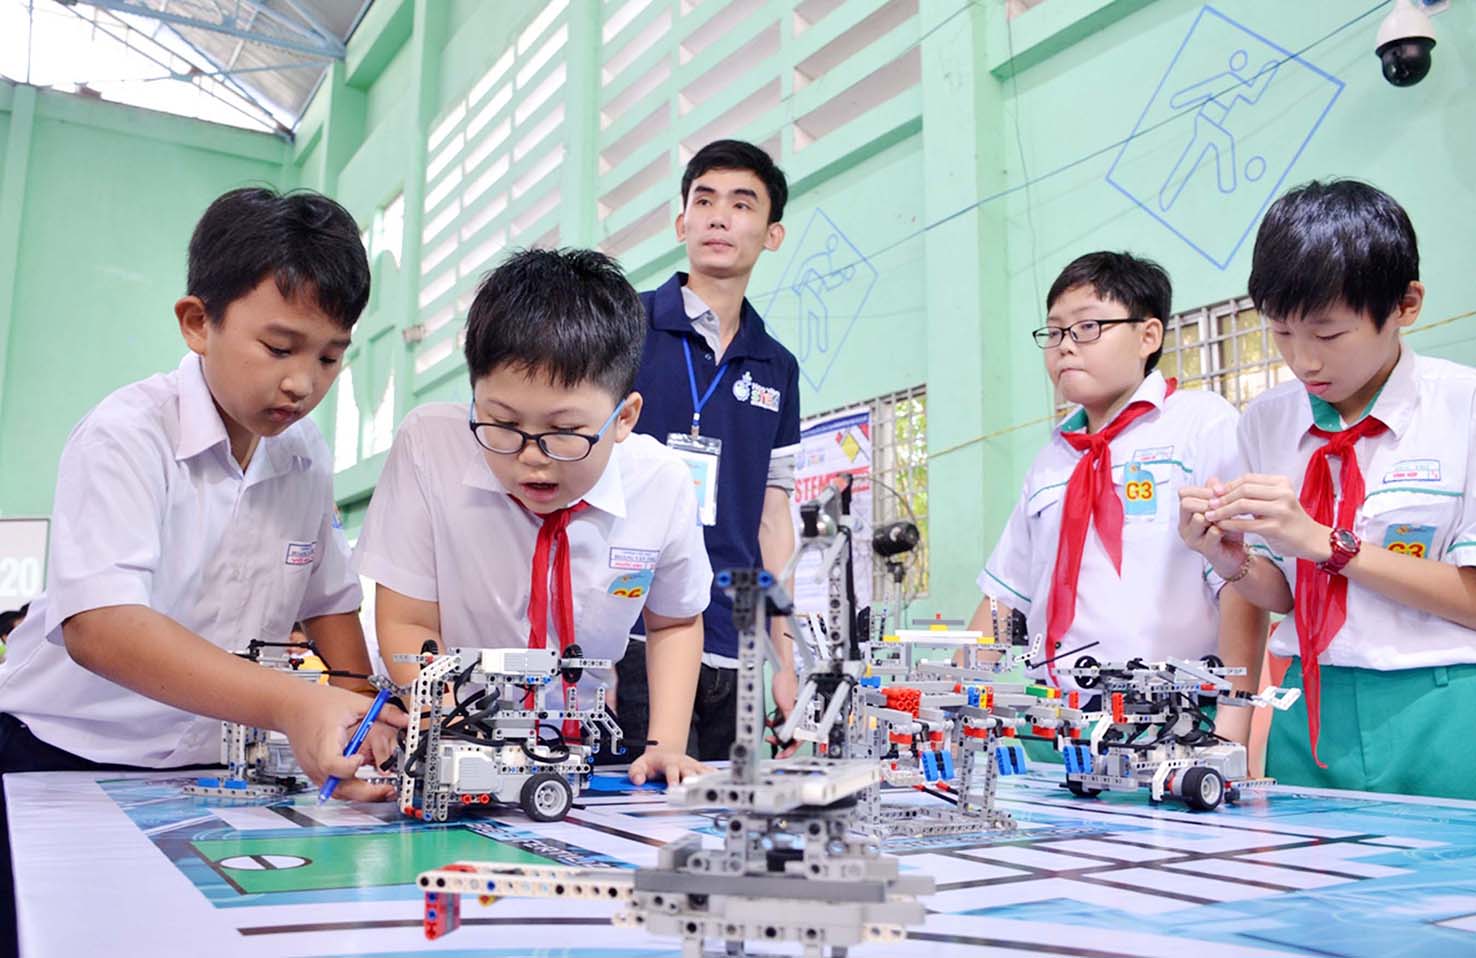 Việt Nam đang thúc đẩy triển khai giáo dục STEM trong chương trình giáo dục phổ thông để học sinh hướng đến các hoạt động thực hành và vận dụng kiến thức để tạo ra sản phẩm hoặc giải quyết các vấn đề của thực tế cuộc sống.